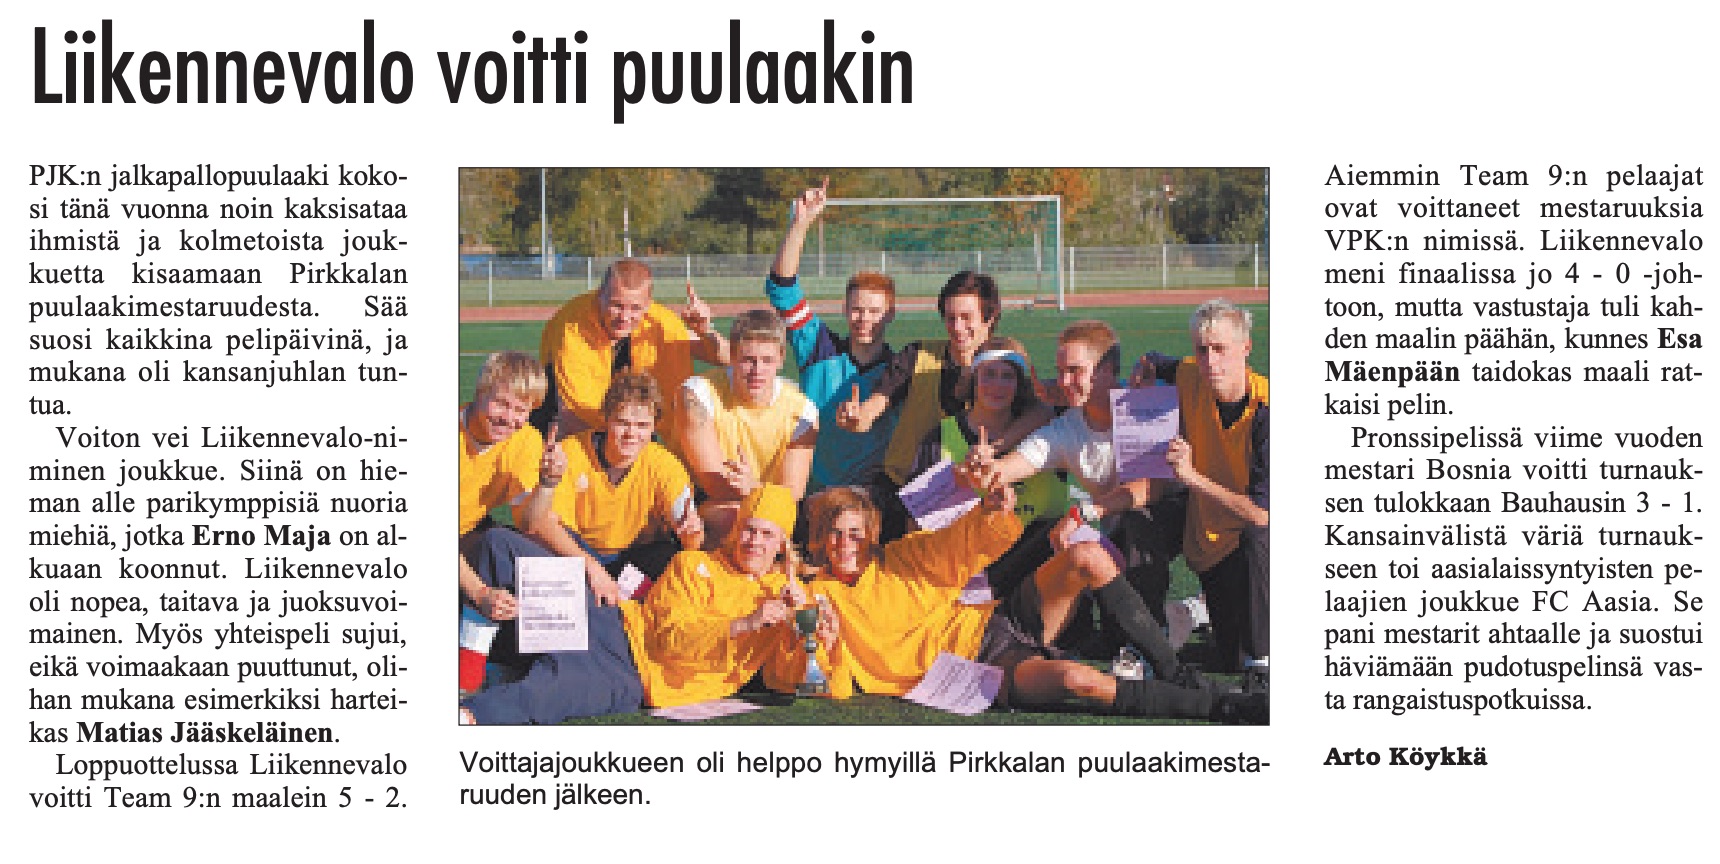 Turnausraportti Pirkkalaisessa 20.09. 2006 (sivu 6)